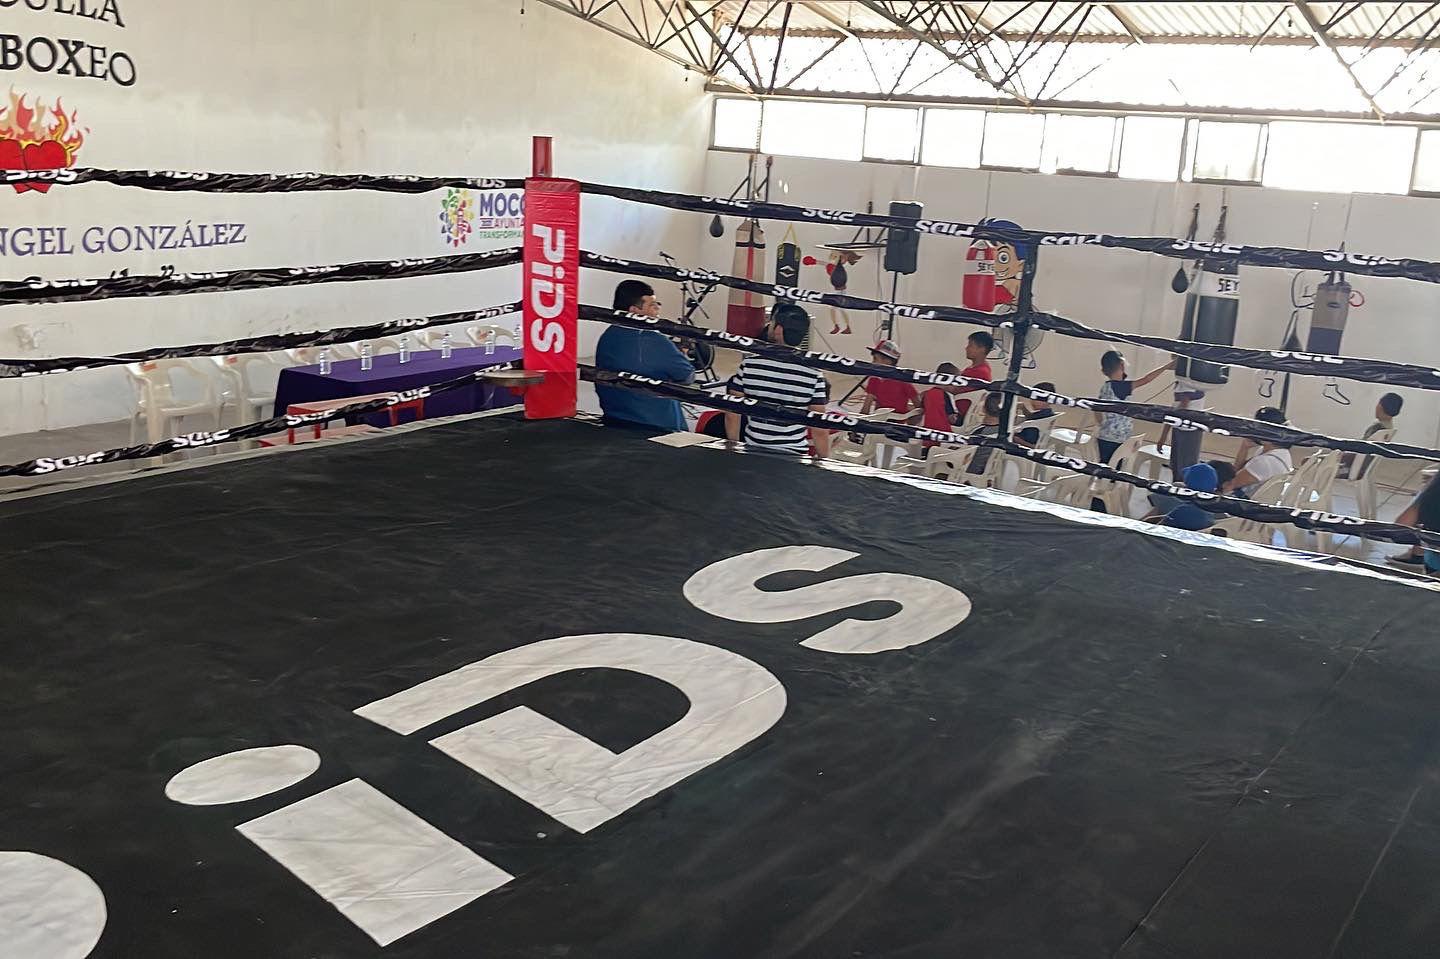 $!PIDS hace entrega de un cuadrilátero de boxeo en Mocorito